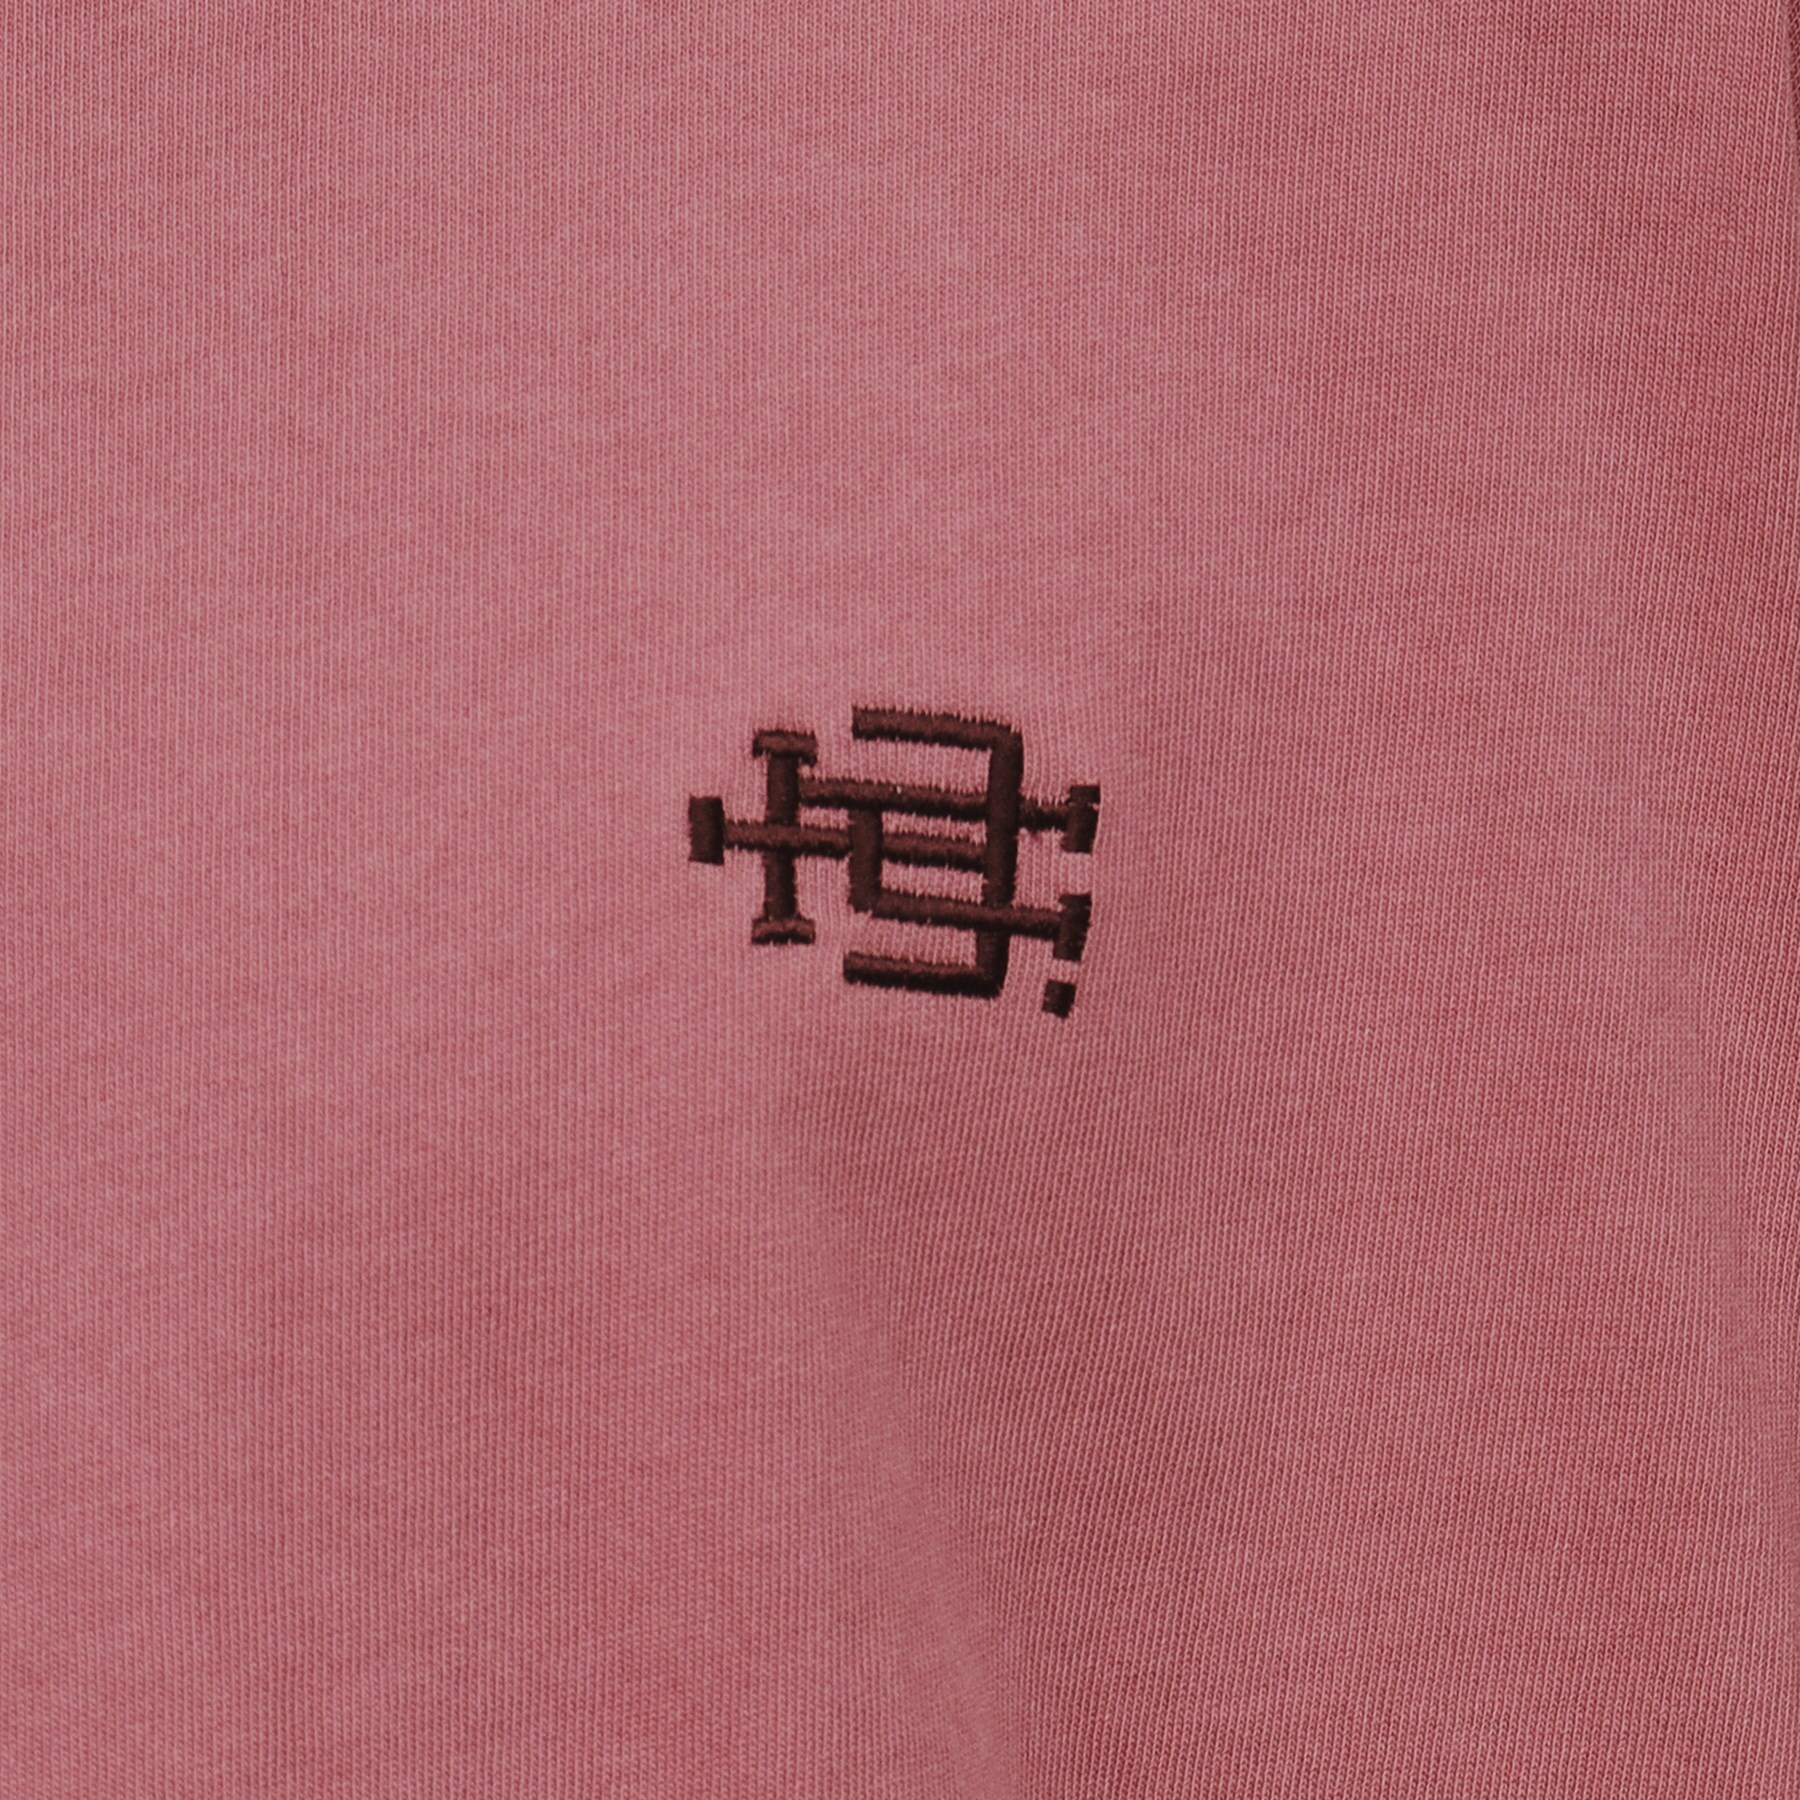 ティーケー タケオ キクチ(tk.TAKEO KIKUCHI)のヴィンテージ ロゴTシャツ21